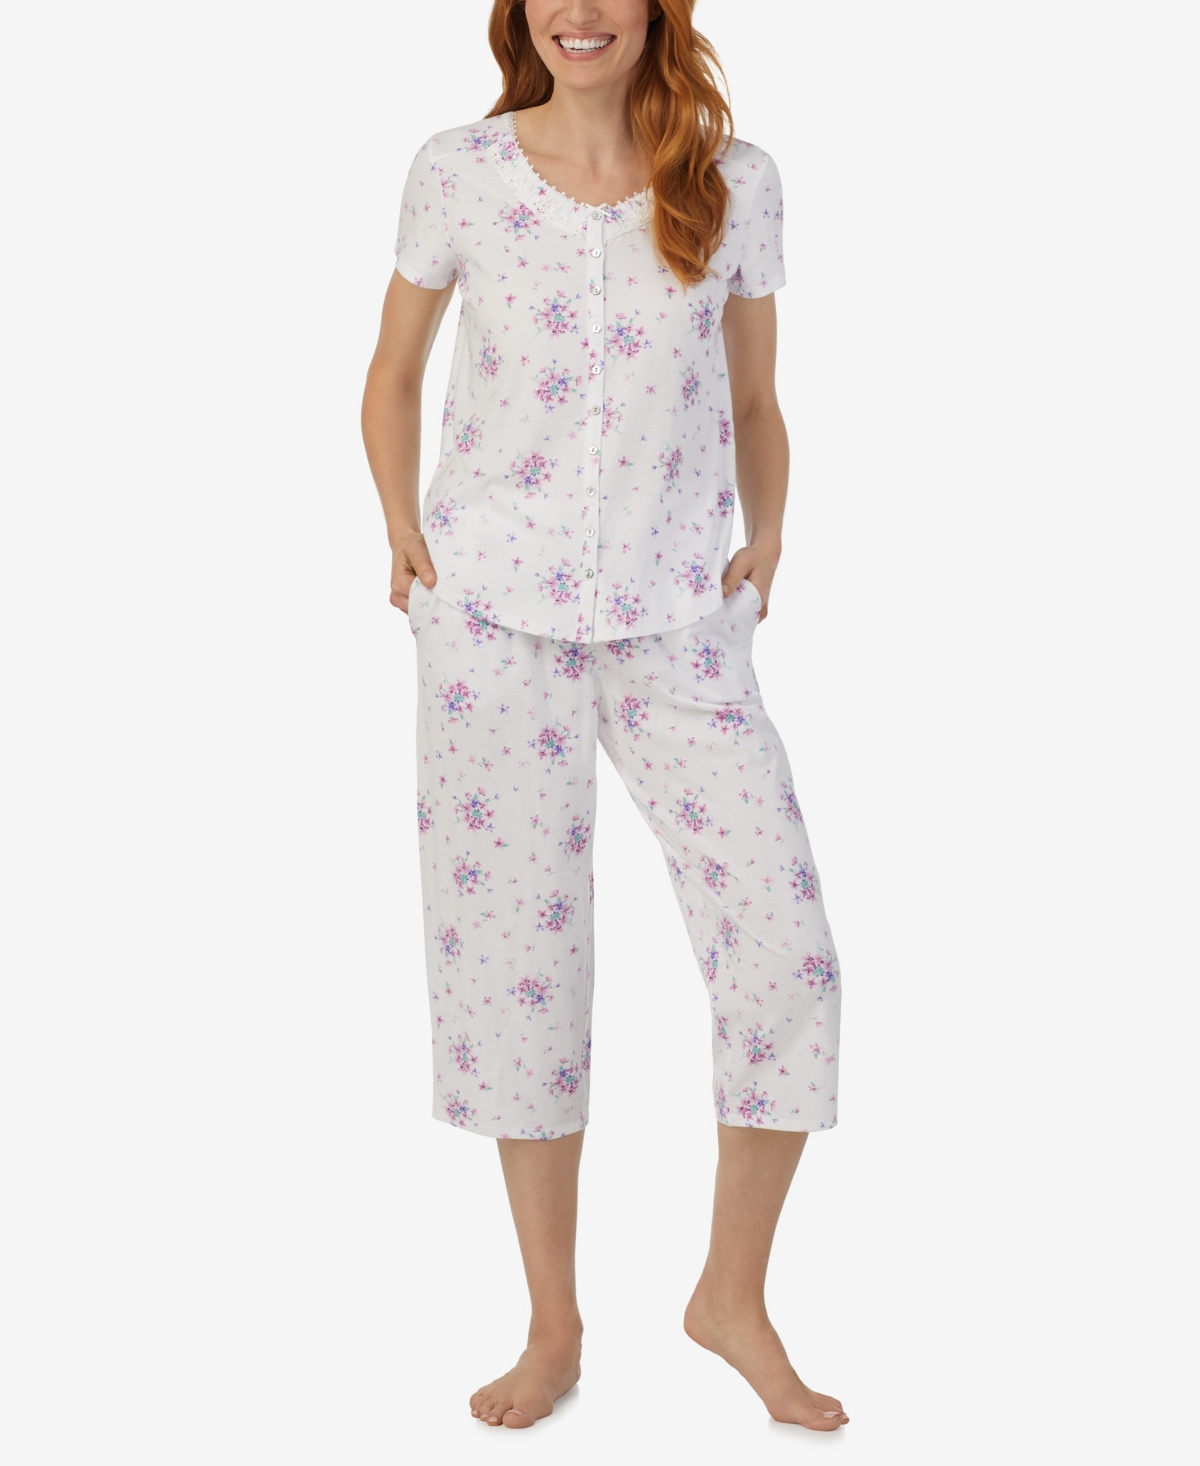 Aria Women's Short Sleeve Top Capri Pants 2-pc. Pajama Set In Floral Print